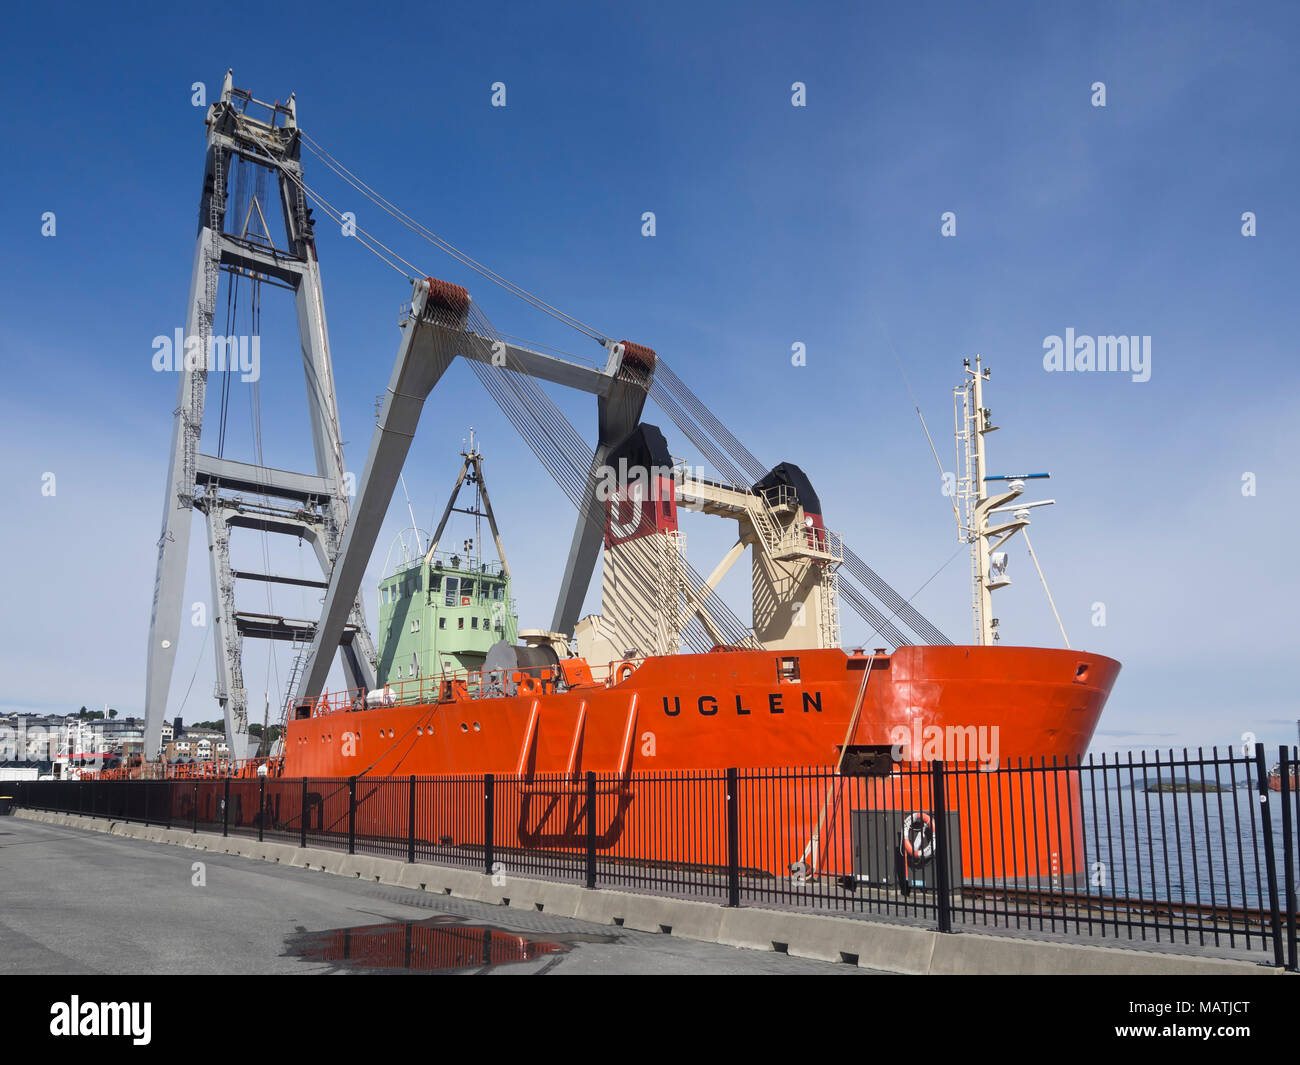 La barge-grue UGLEN navire dans le port de Stavanger en Norvège, peut soulever 800 tonnes, principalement d'exploitation dans l'industrie offshore Banque D'Images